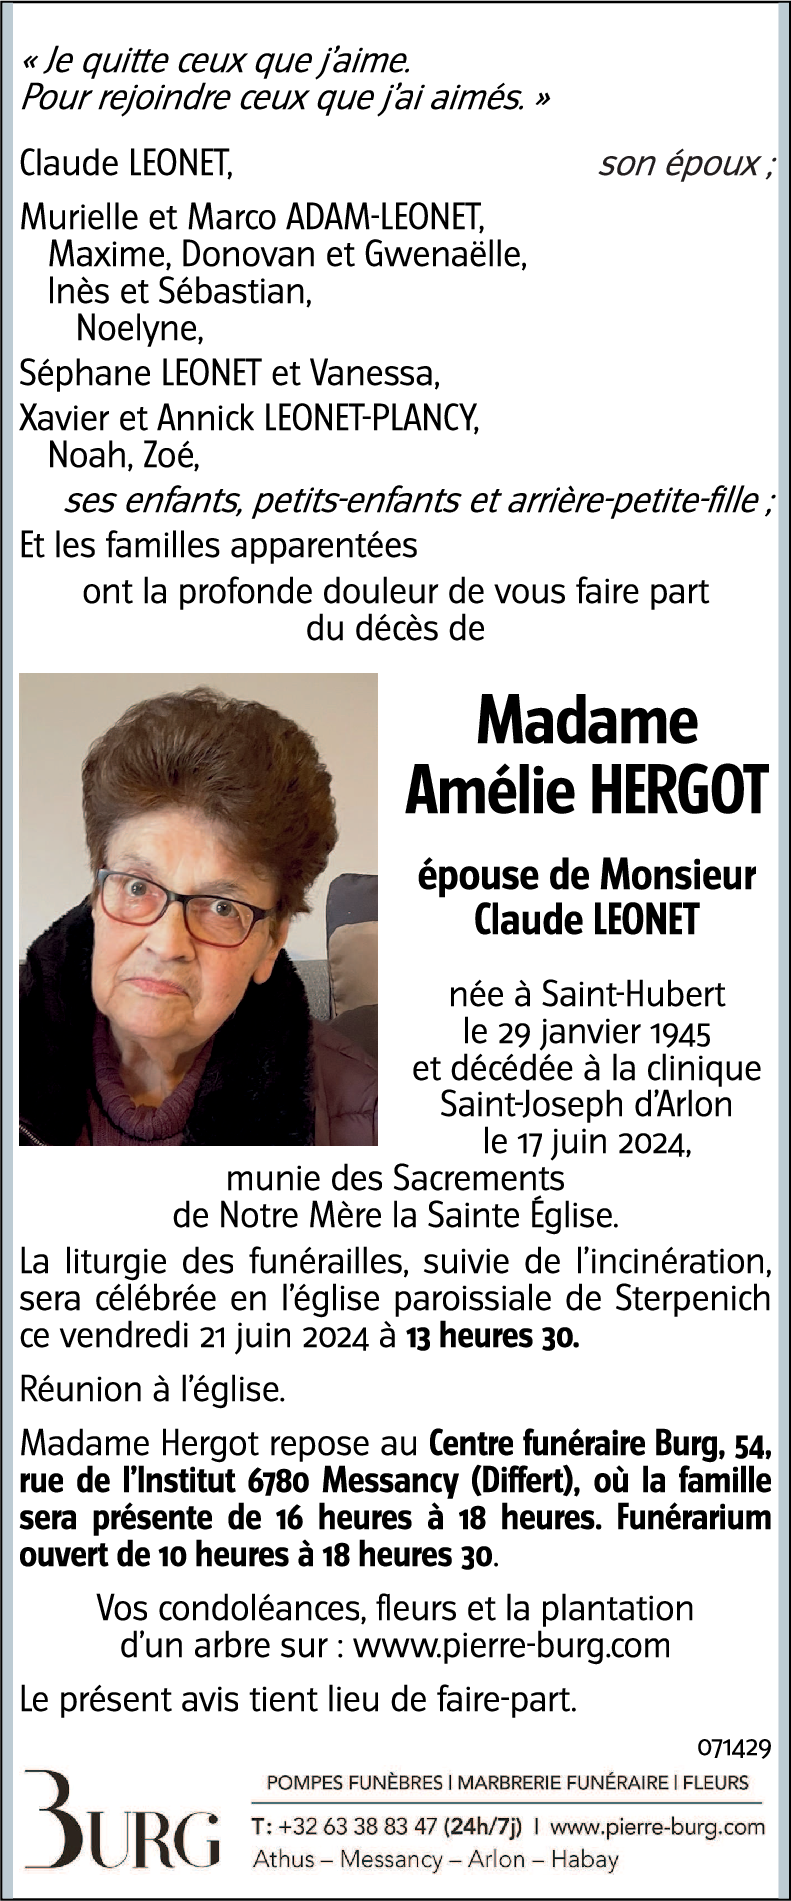 Amélie HERGOT